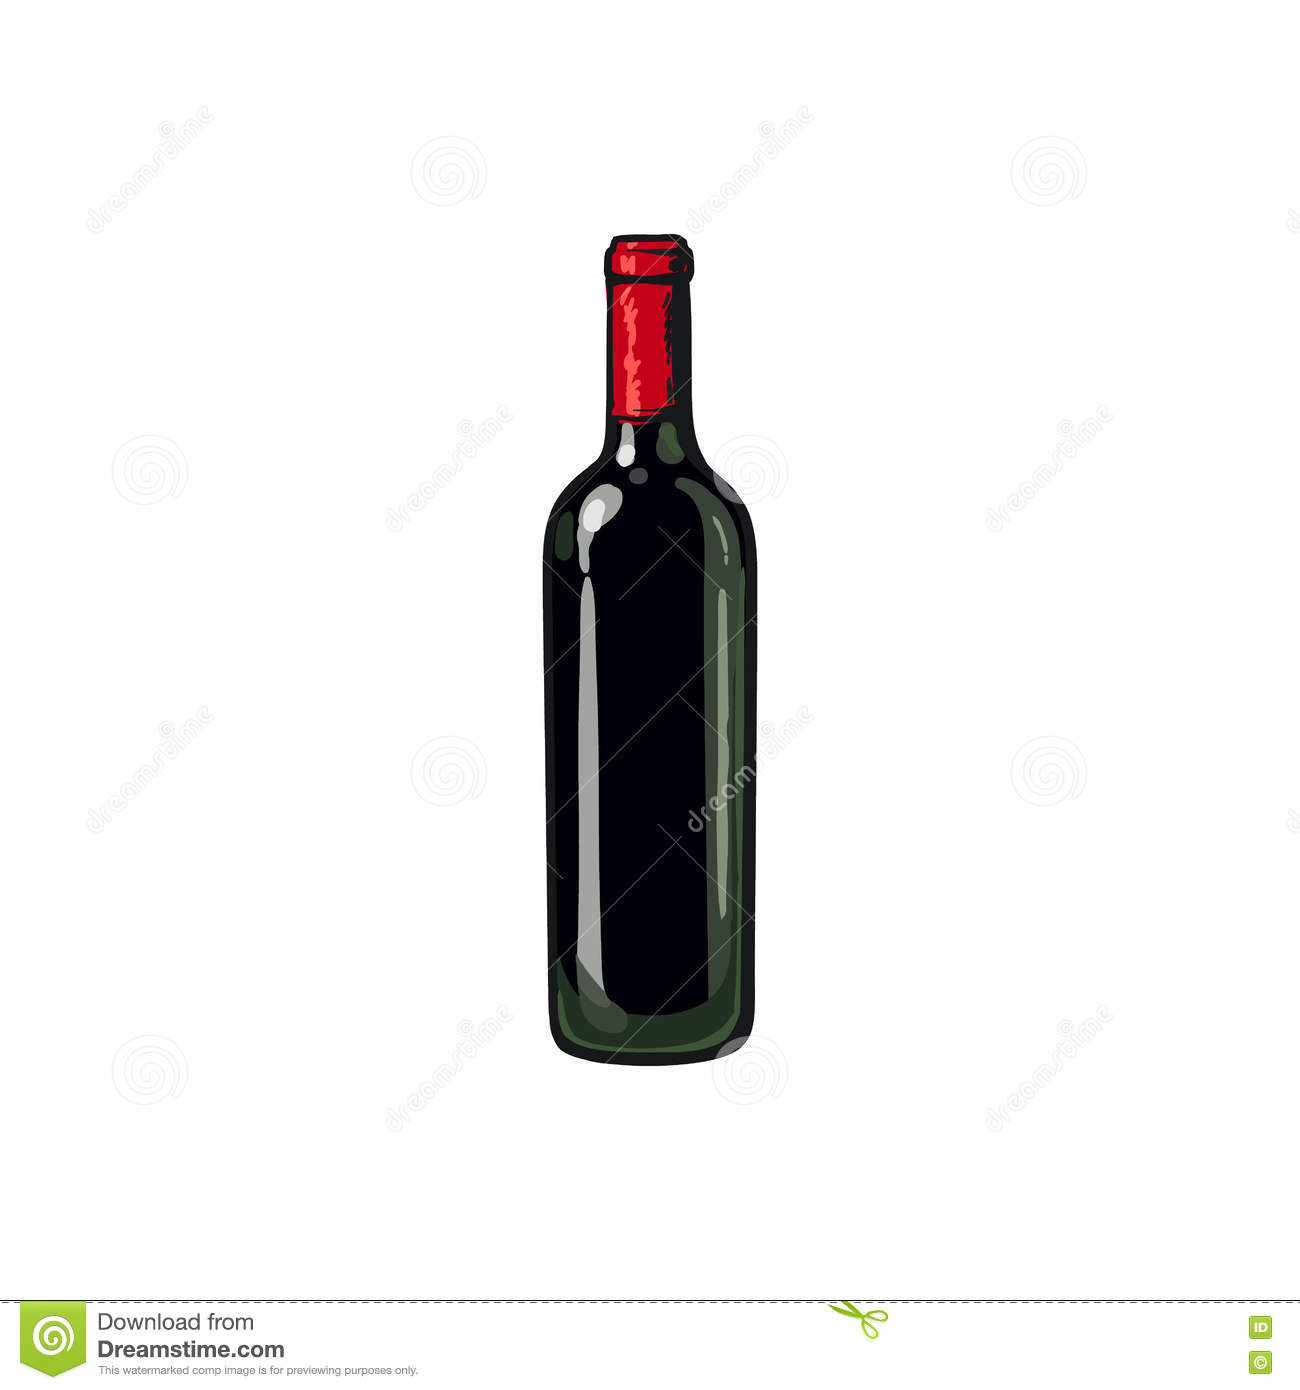 Bouteille De Vin Rouge, Illustration D&amp;#039;Isolement De dedans Coloriage Dessin Bouteille De Vin